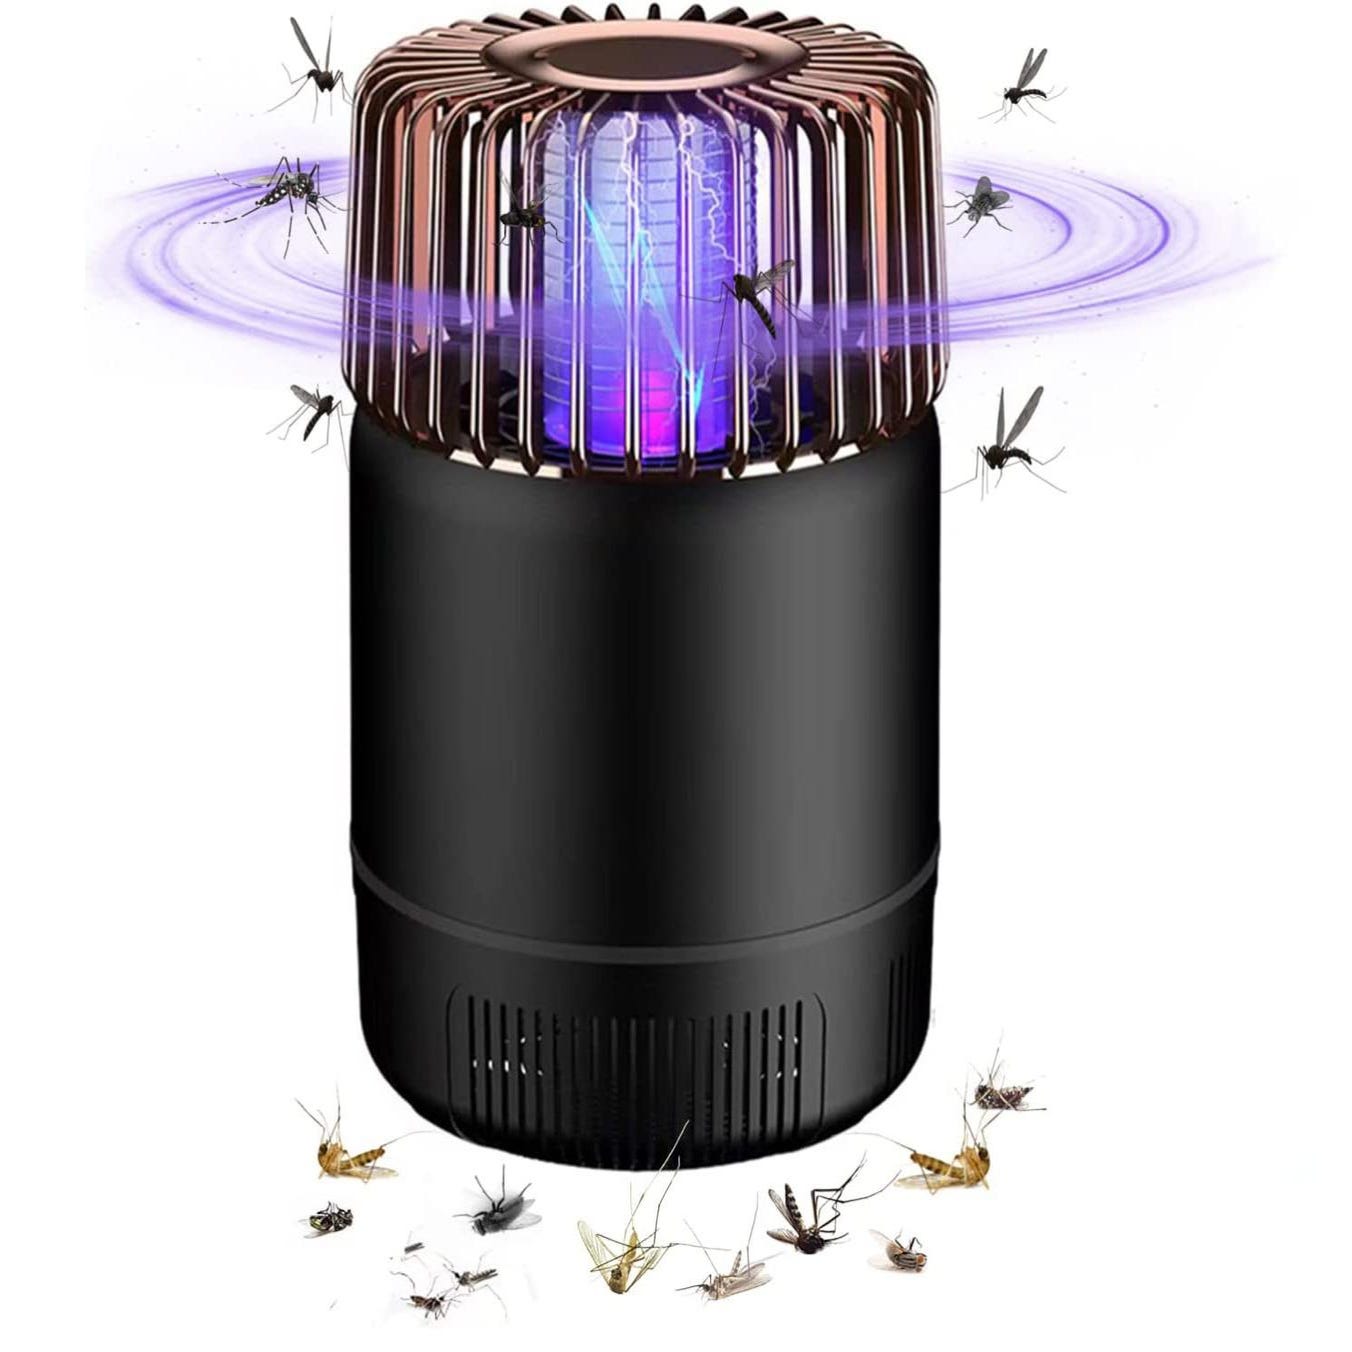 FK8420 Lampe Anti-Moustique / Piège à Insectes / Attrape-Mouches Electrique  - 2 Lampes UV - 10W - Posé ou Suspendu